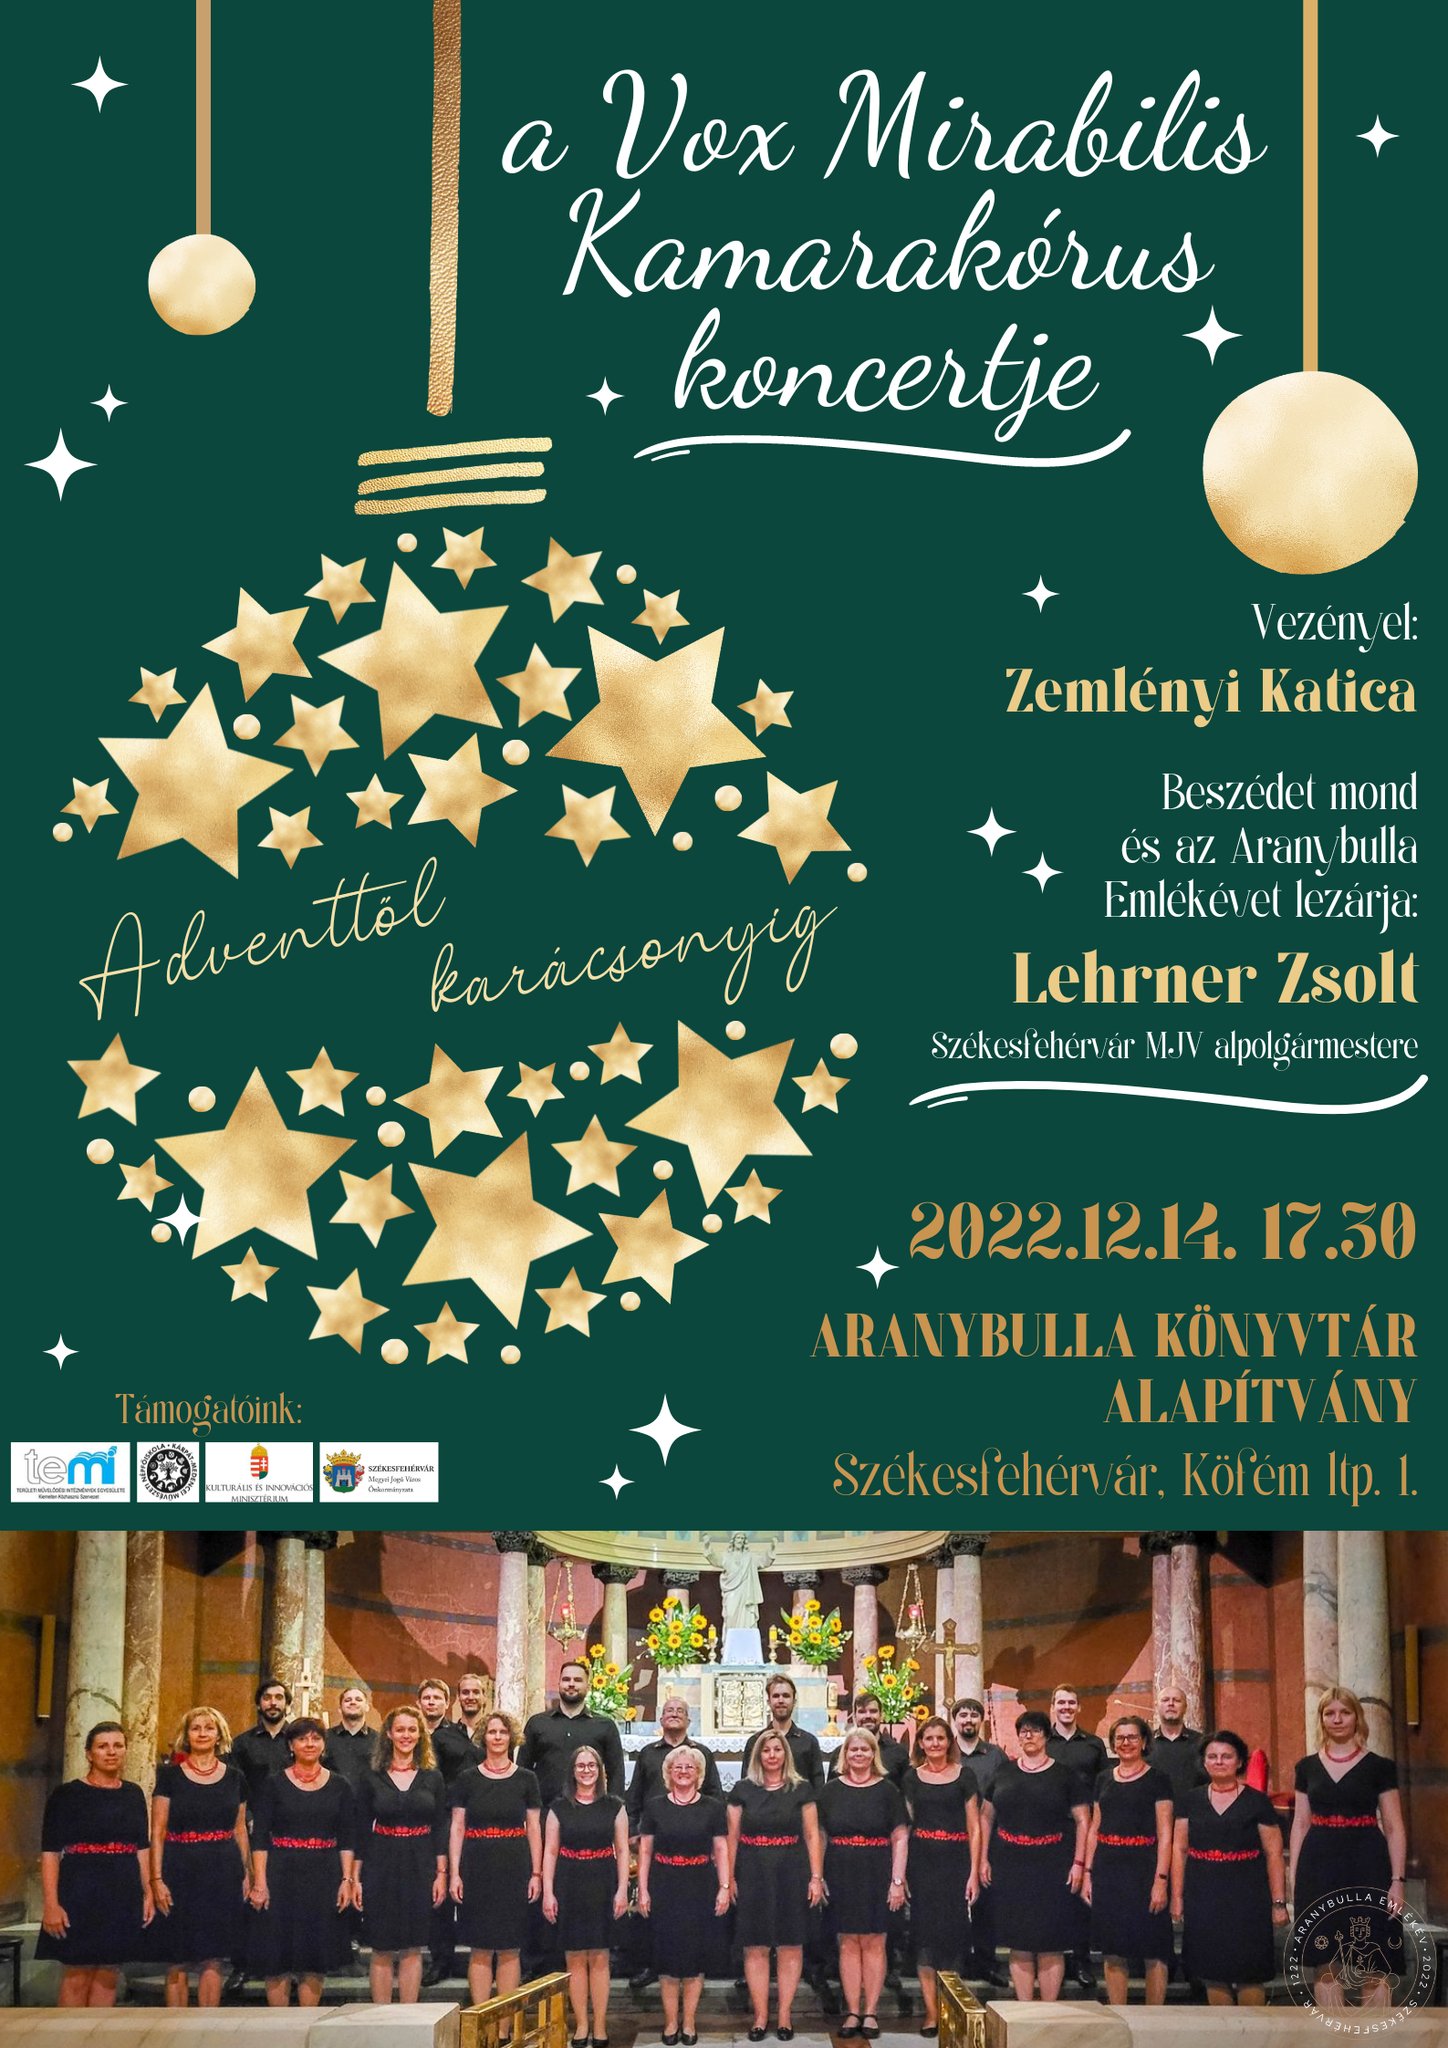 Szombaton kreatív családi program, jövő szerdán Vox Mirabilis koncert lesz az Aranybulla Könyvtárban